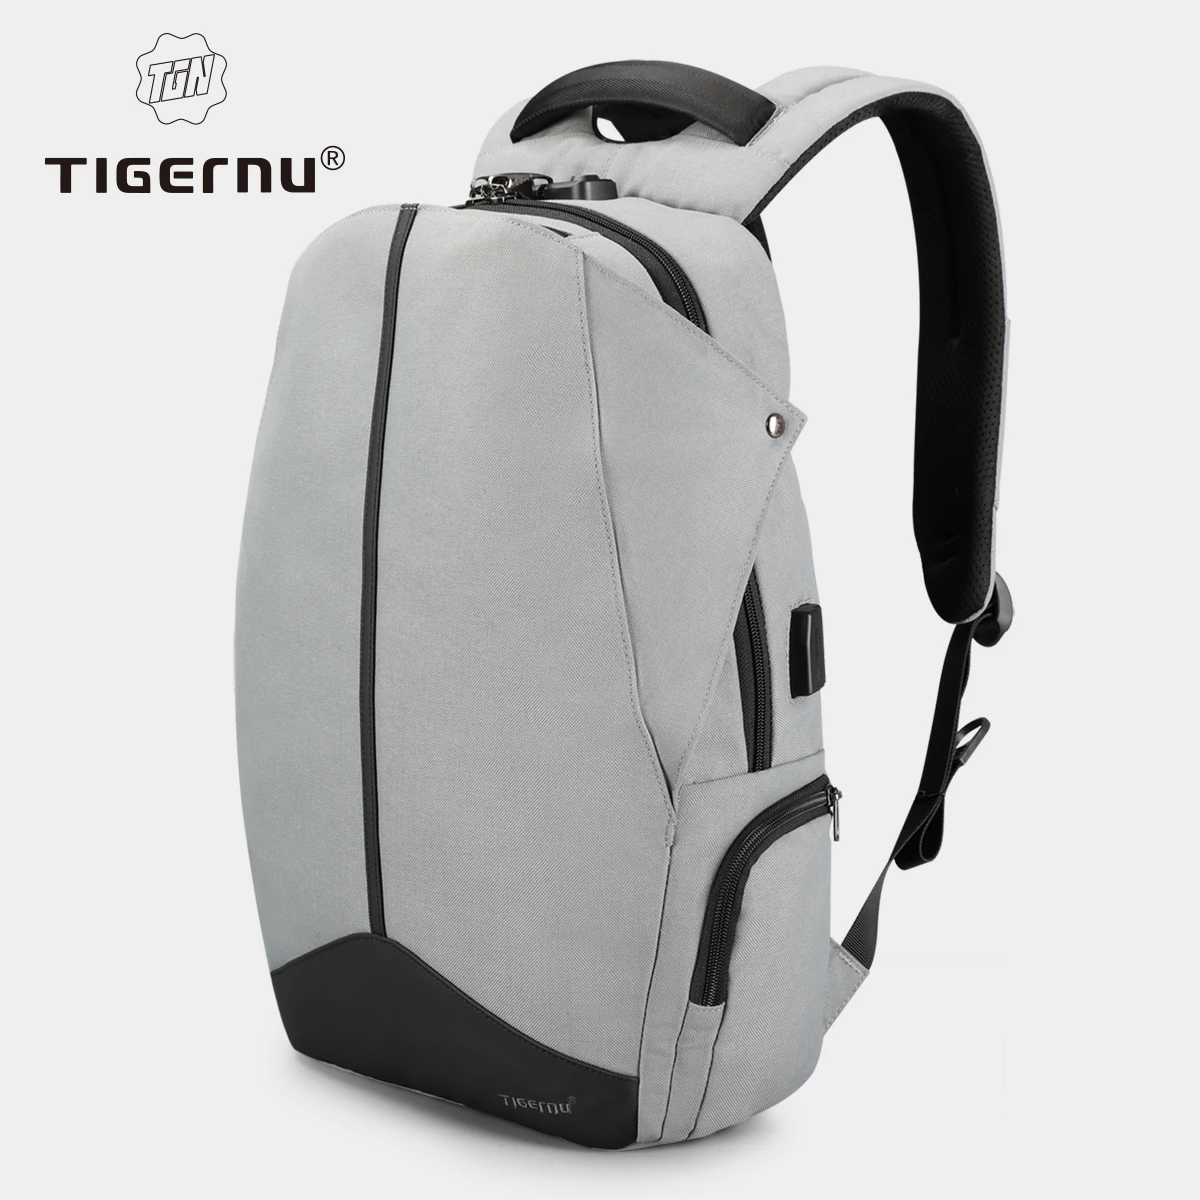 Tigernu Anti robo cremallera patentado cerradura TSA No clave de diseño hombres USB 15,6 pulgadas portátil mochilas mochila estudiante Universidad mochila